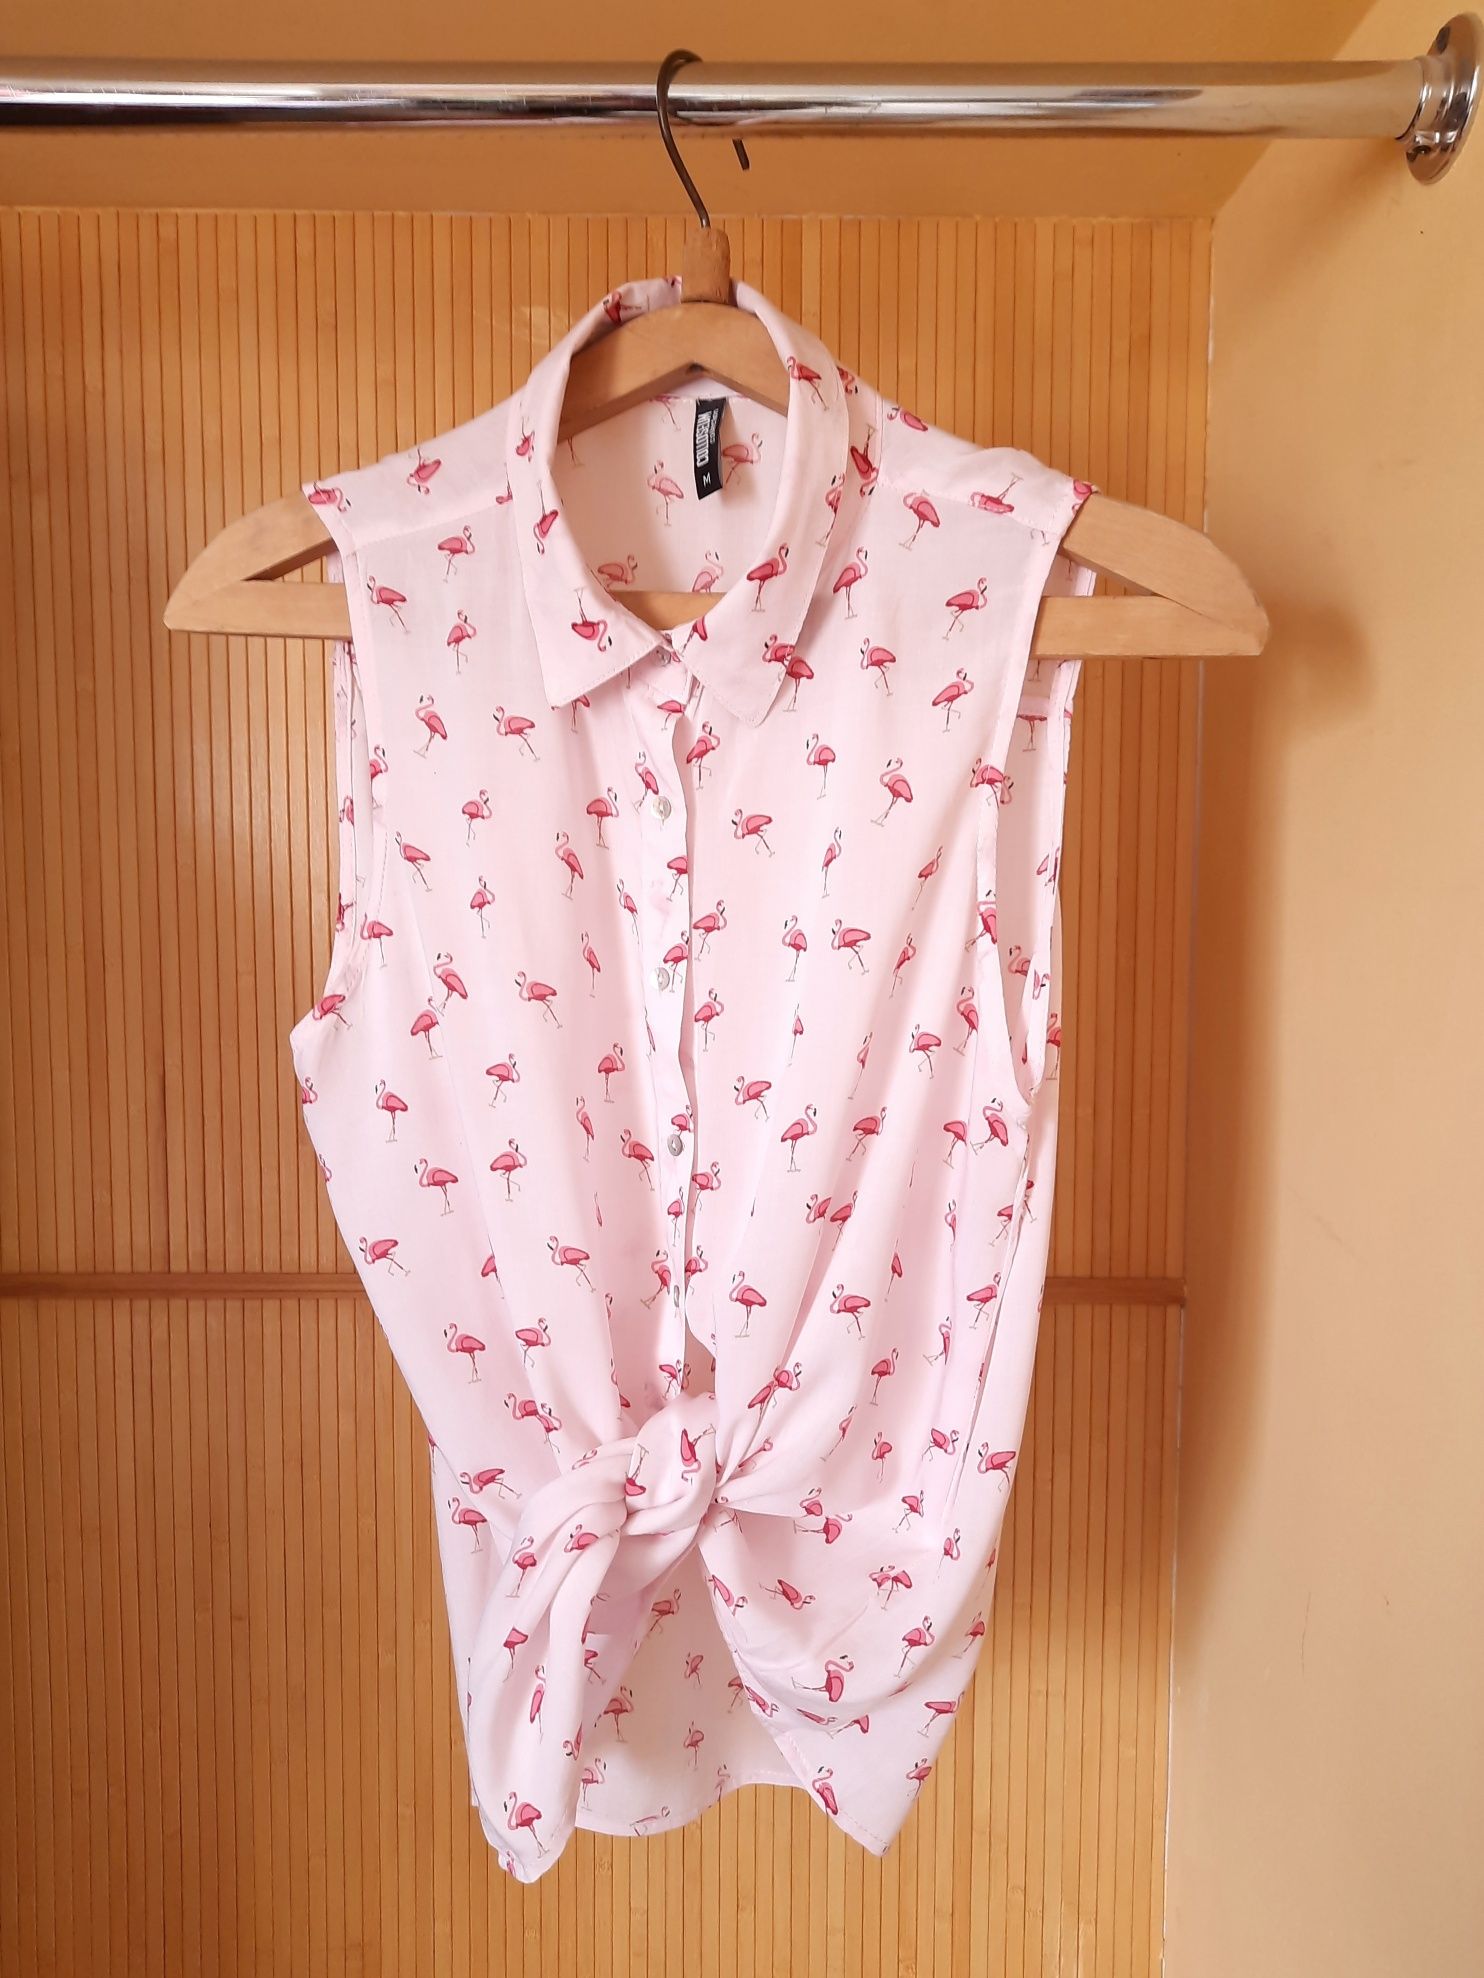 Летняя розовая блузка рубашка с фламинго (М)